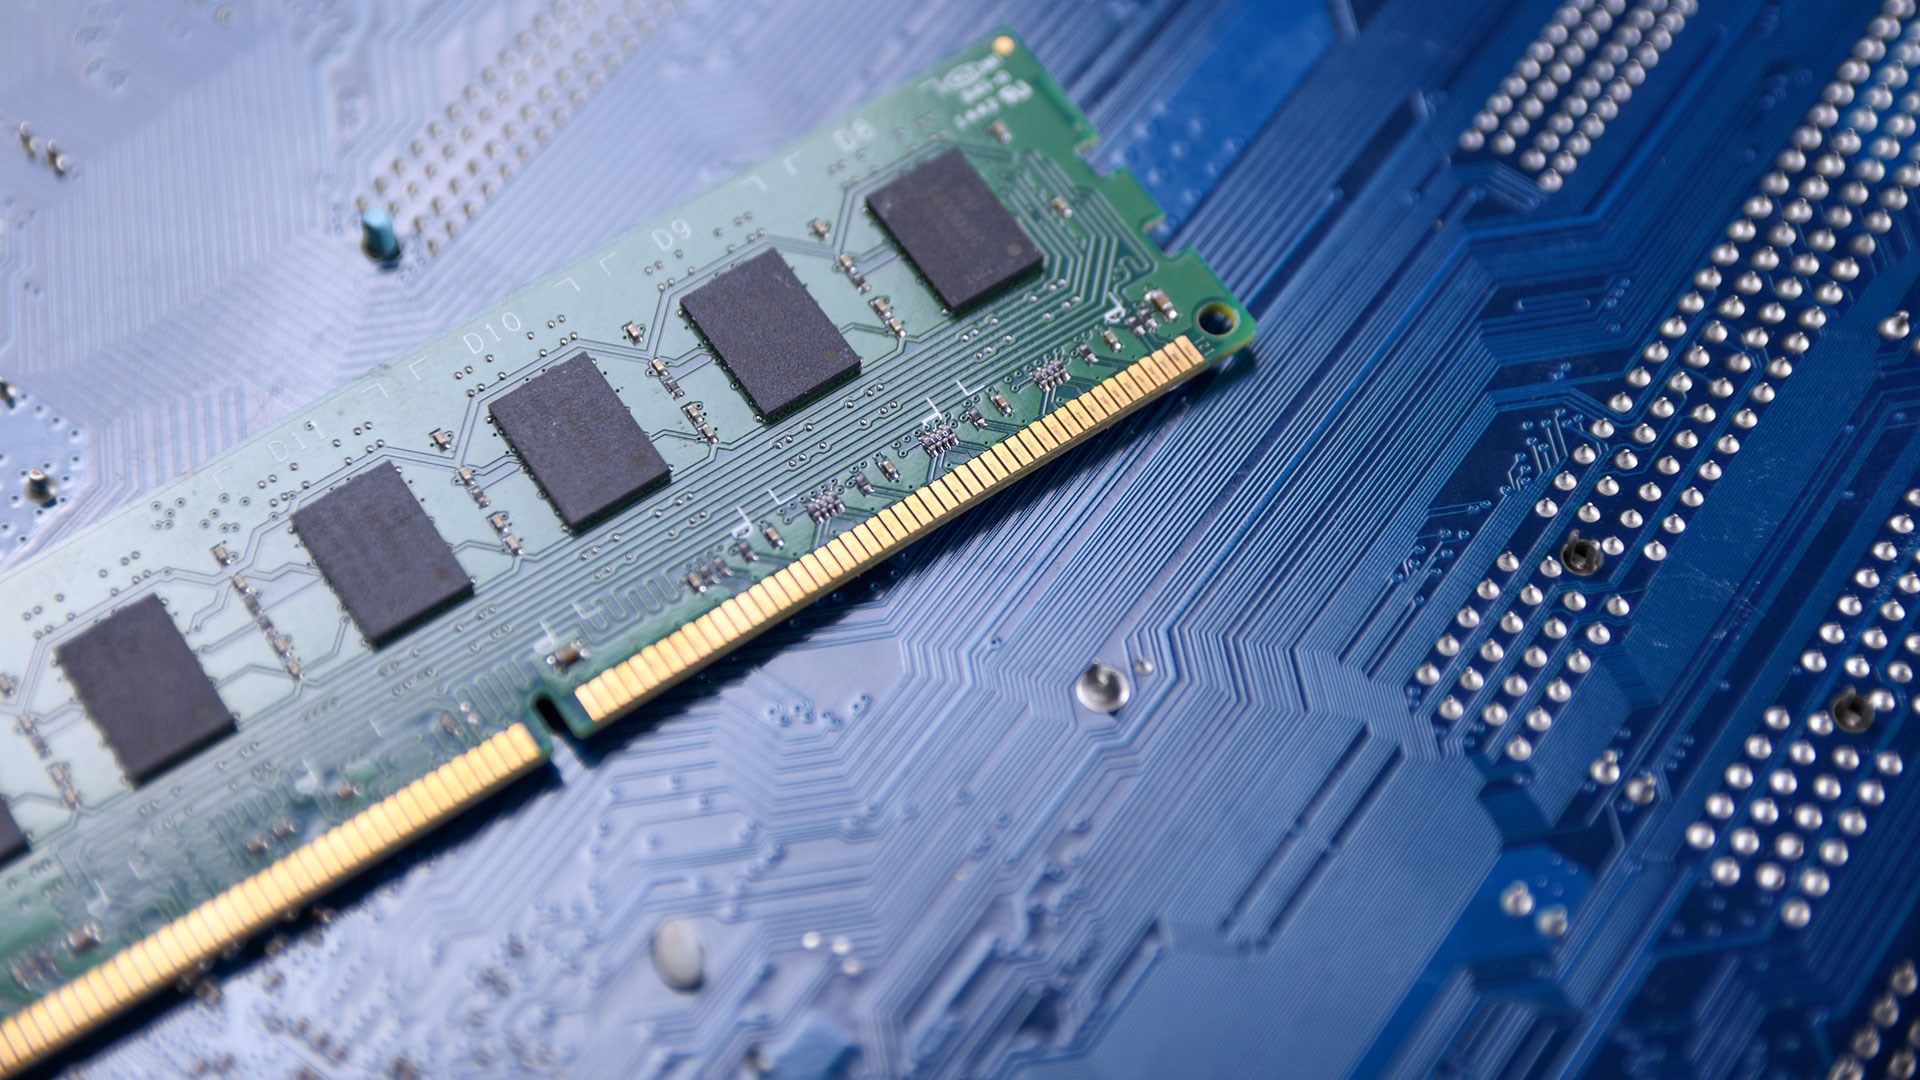 Samsung ve SK hynix, DDR3 belleklerin fişini çekti